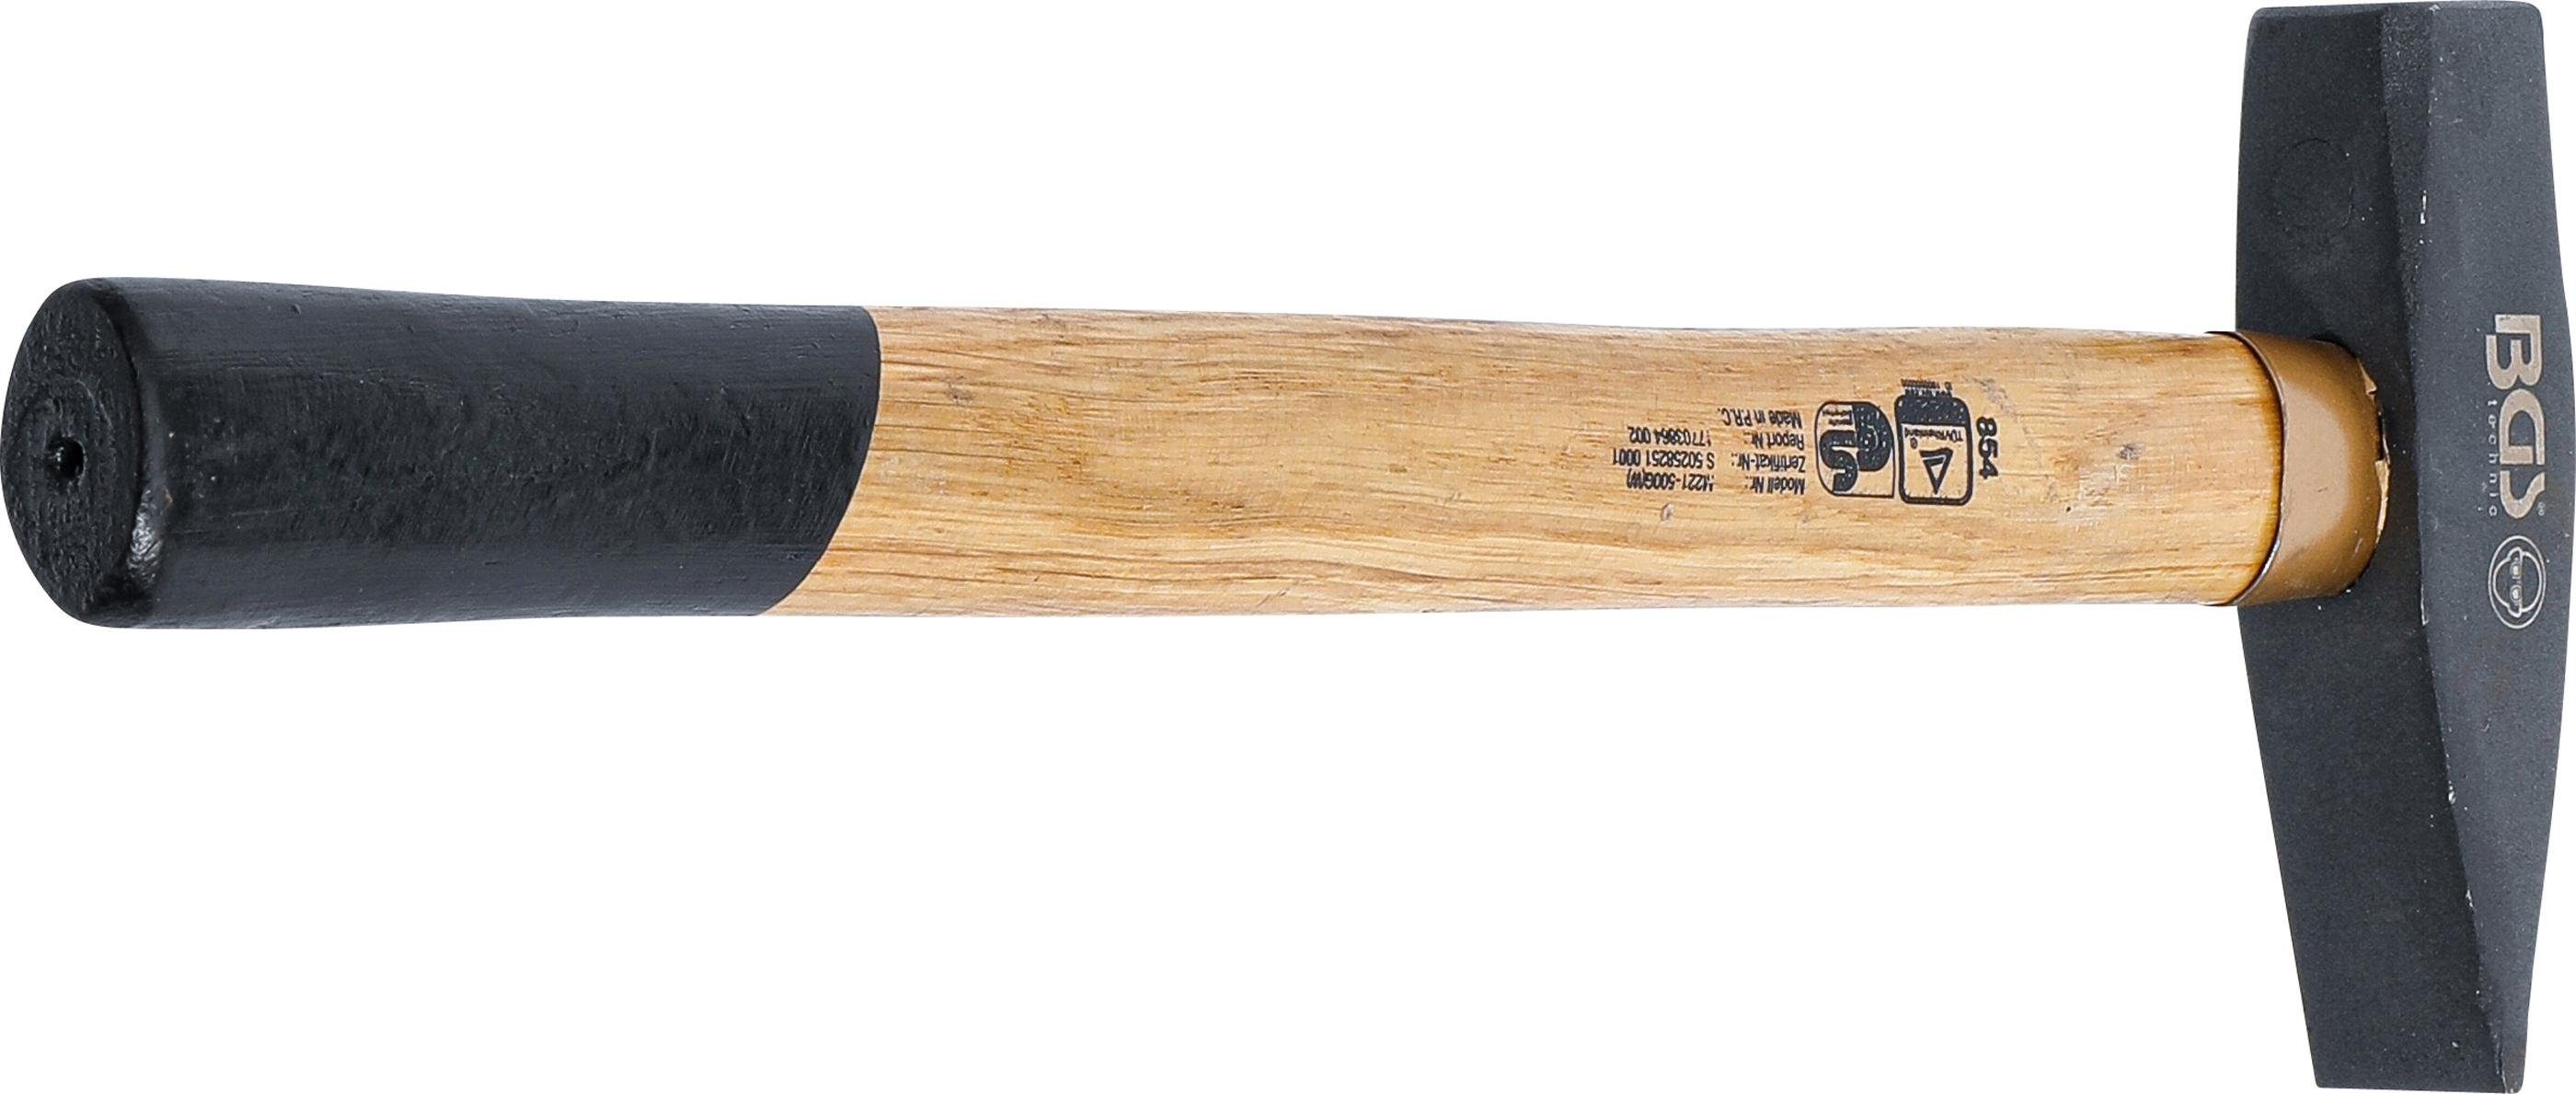 BGS technic Hammer Schlosserhammer, Holz-Stiel, 1041, DIN 500 g